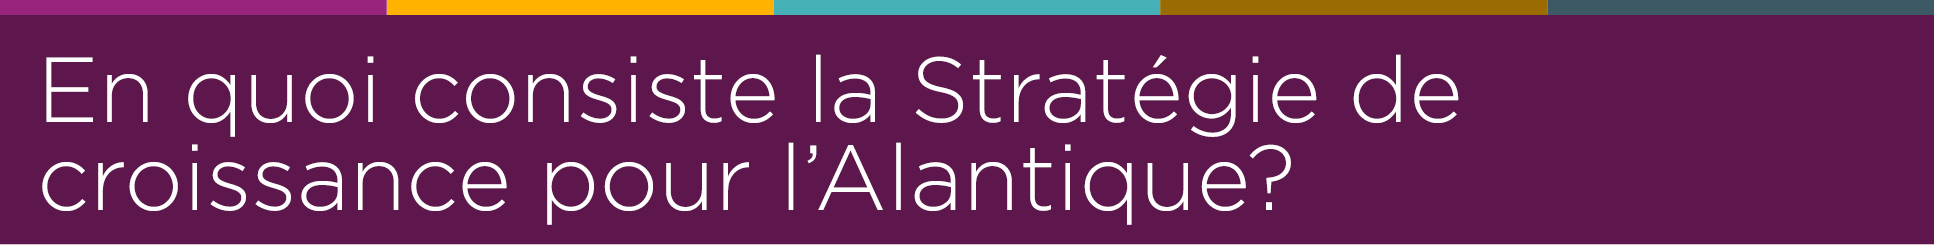 En quoi consiste la Stratégie de croissance pour l'Atlantique?